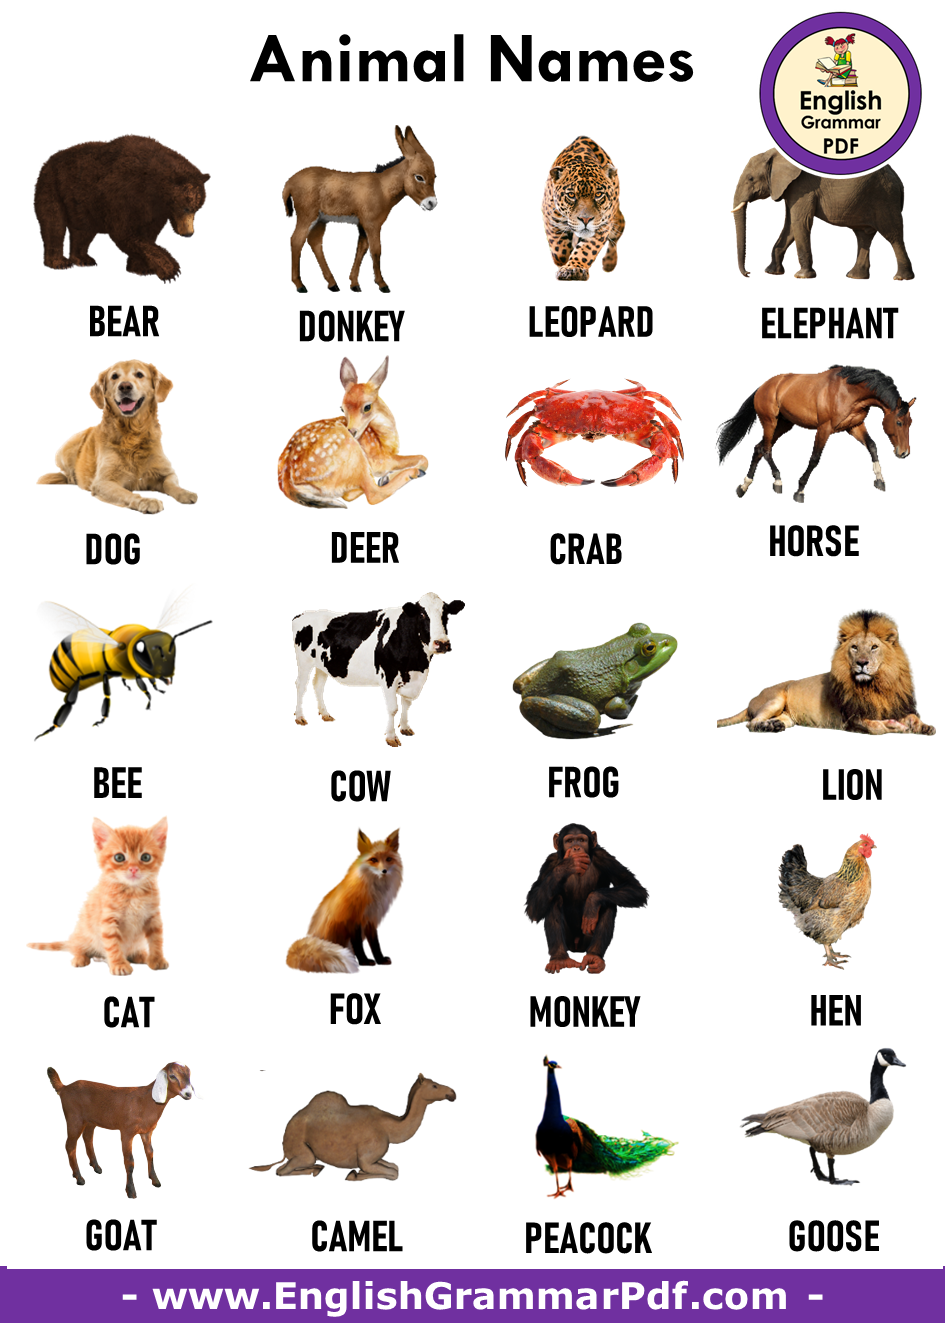 Имя animals. Животные с именами. Имена для животных. Имена всех животных. Клички животных на английском.